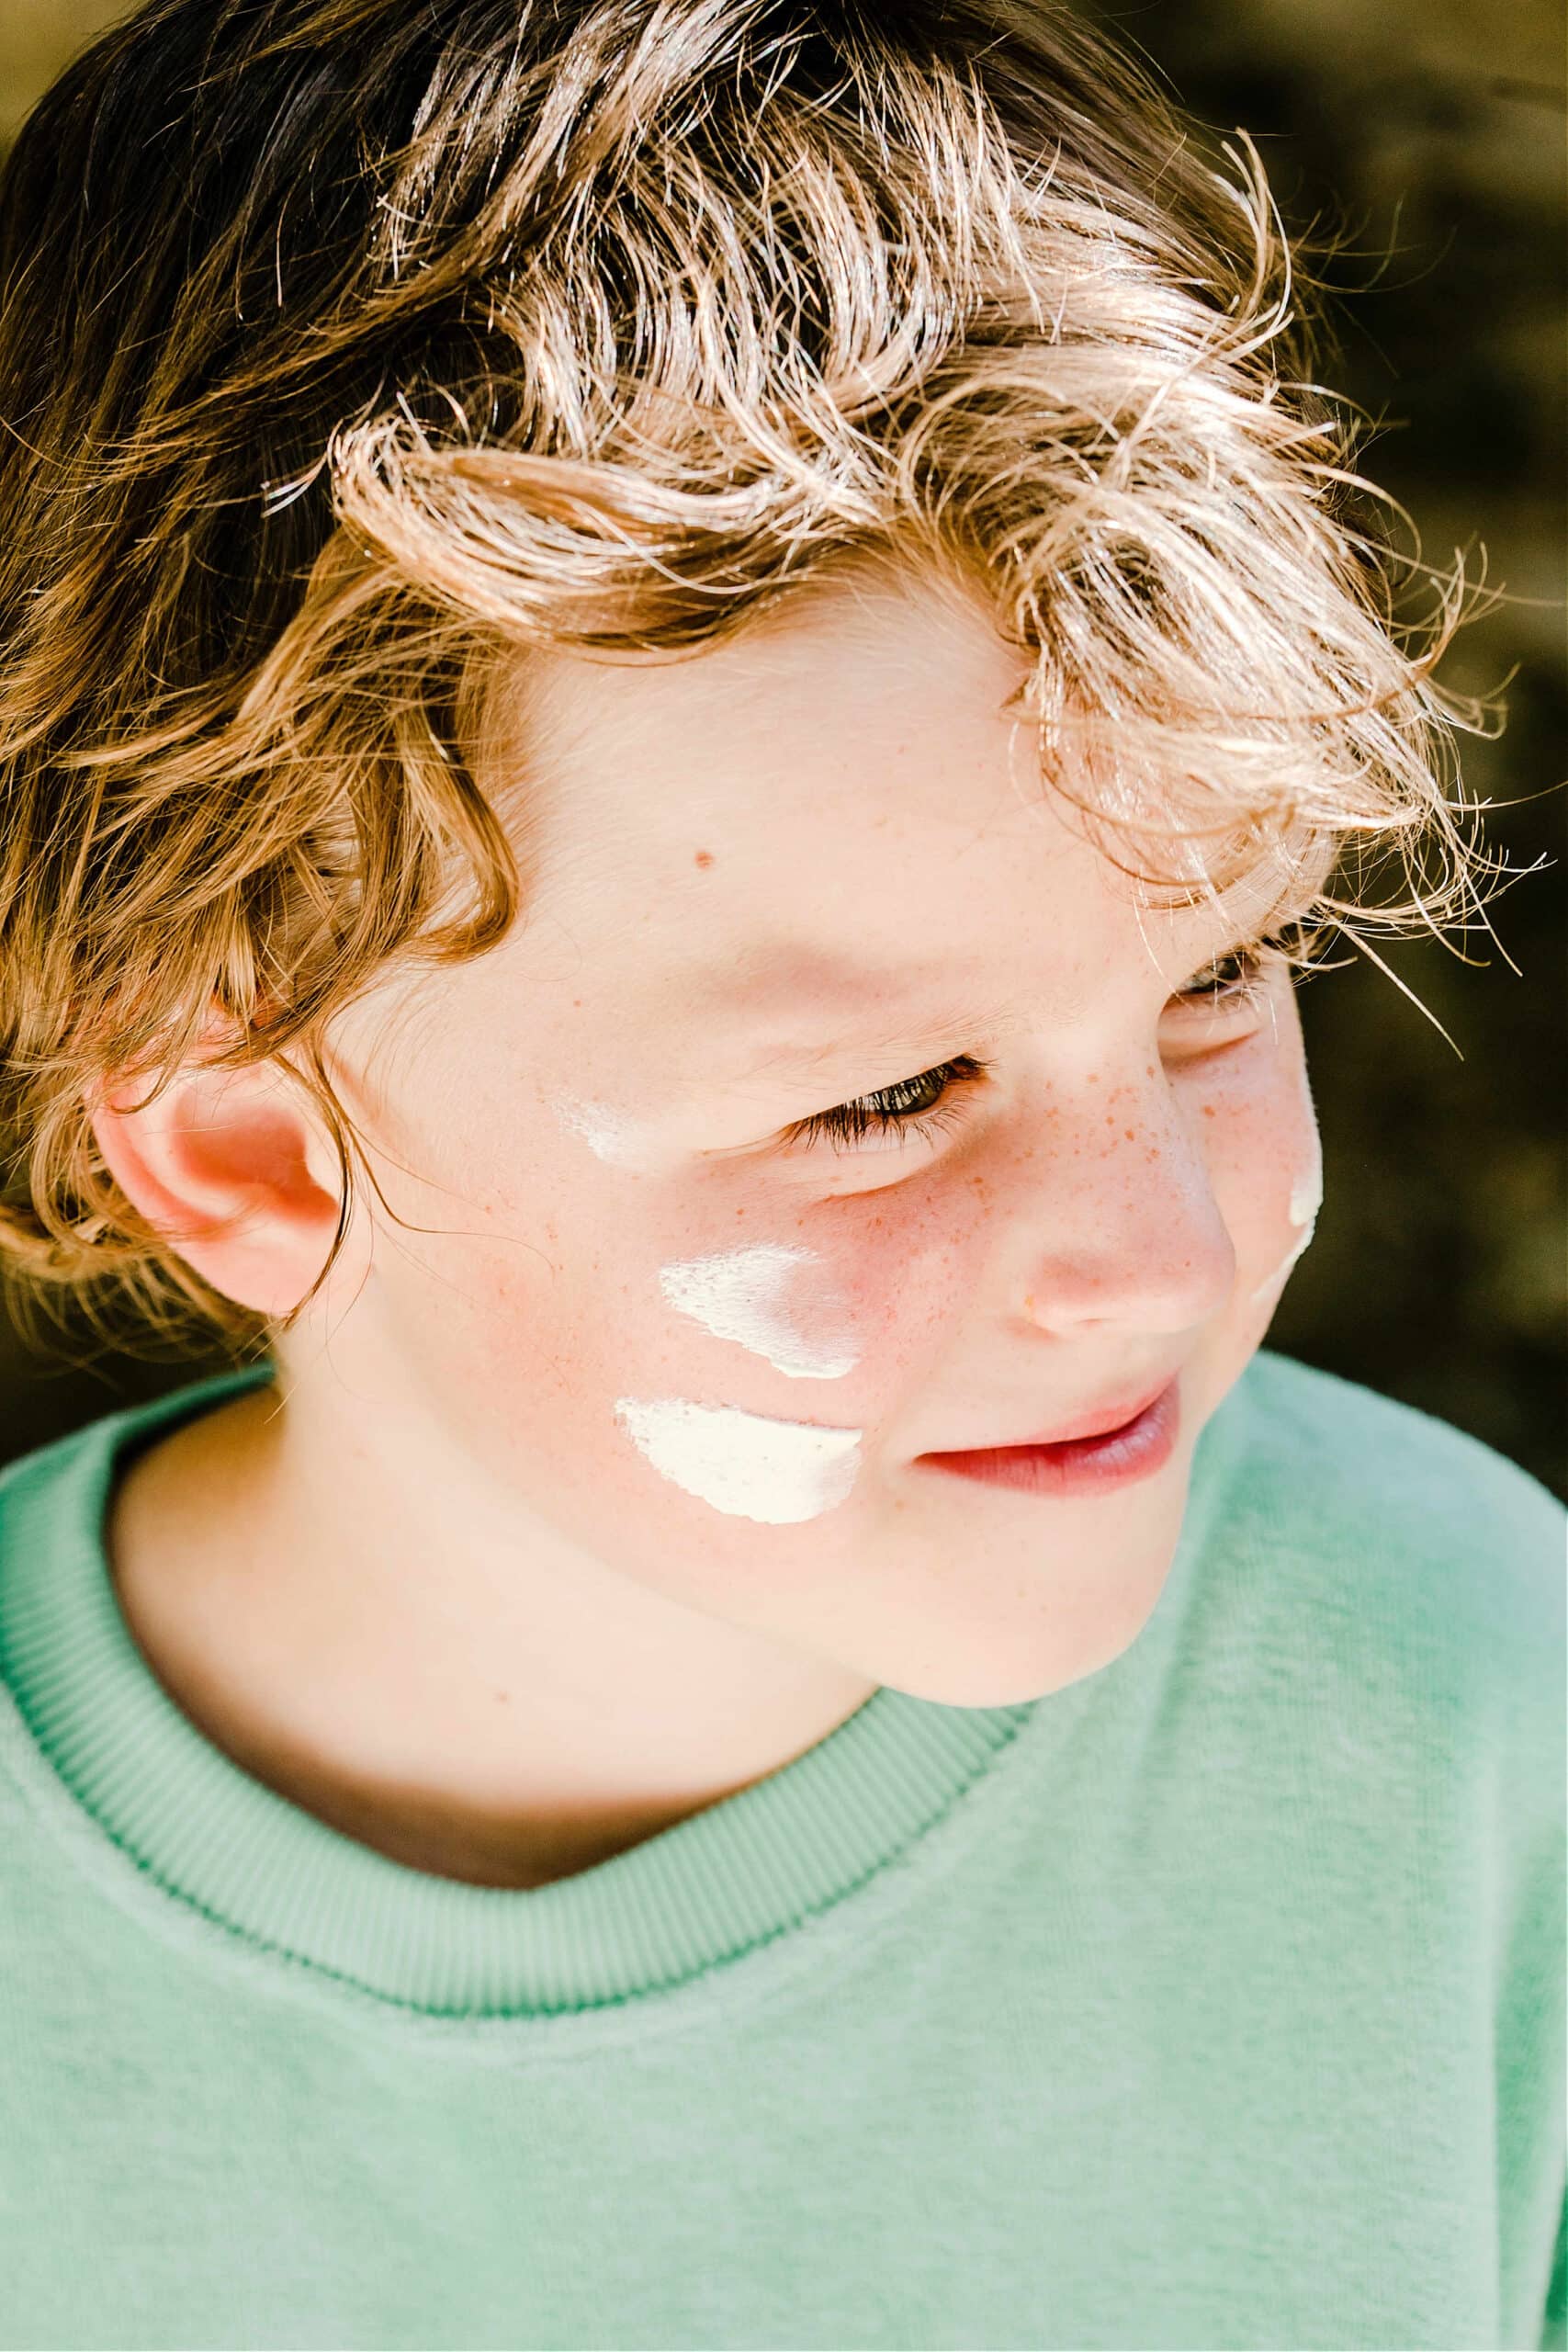 enfant avec baume solaire sur les joues